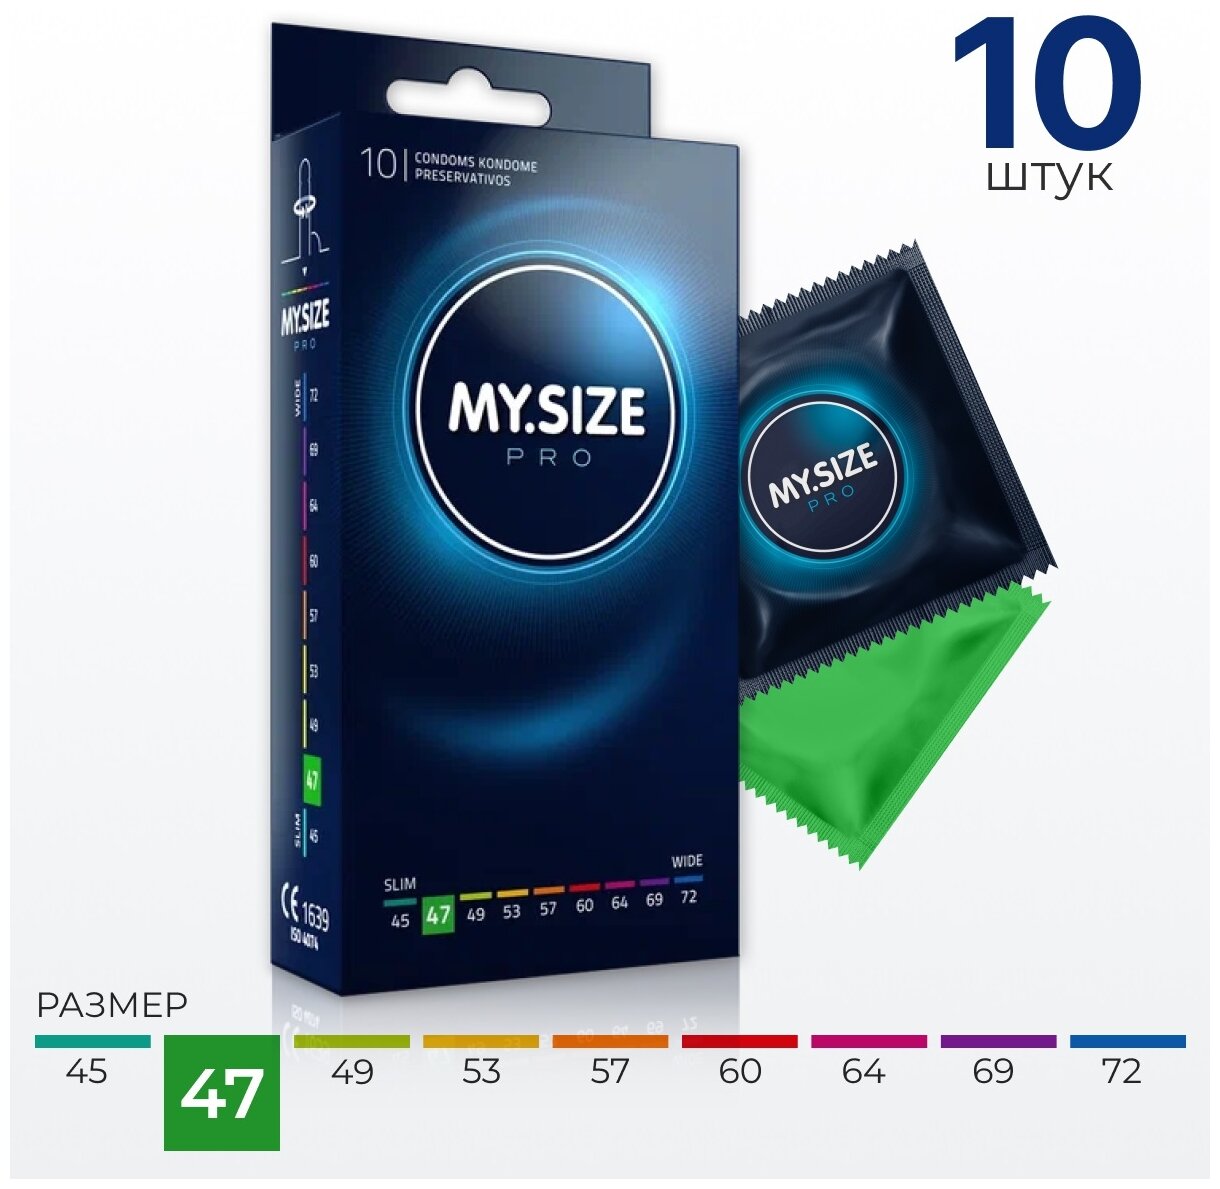 MY.SIZE / MY SIZE размер 47 (10 шт.)/ Майсайз презерватив маленького размера - ширина 47 мм/ узкий